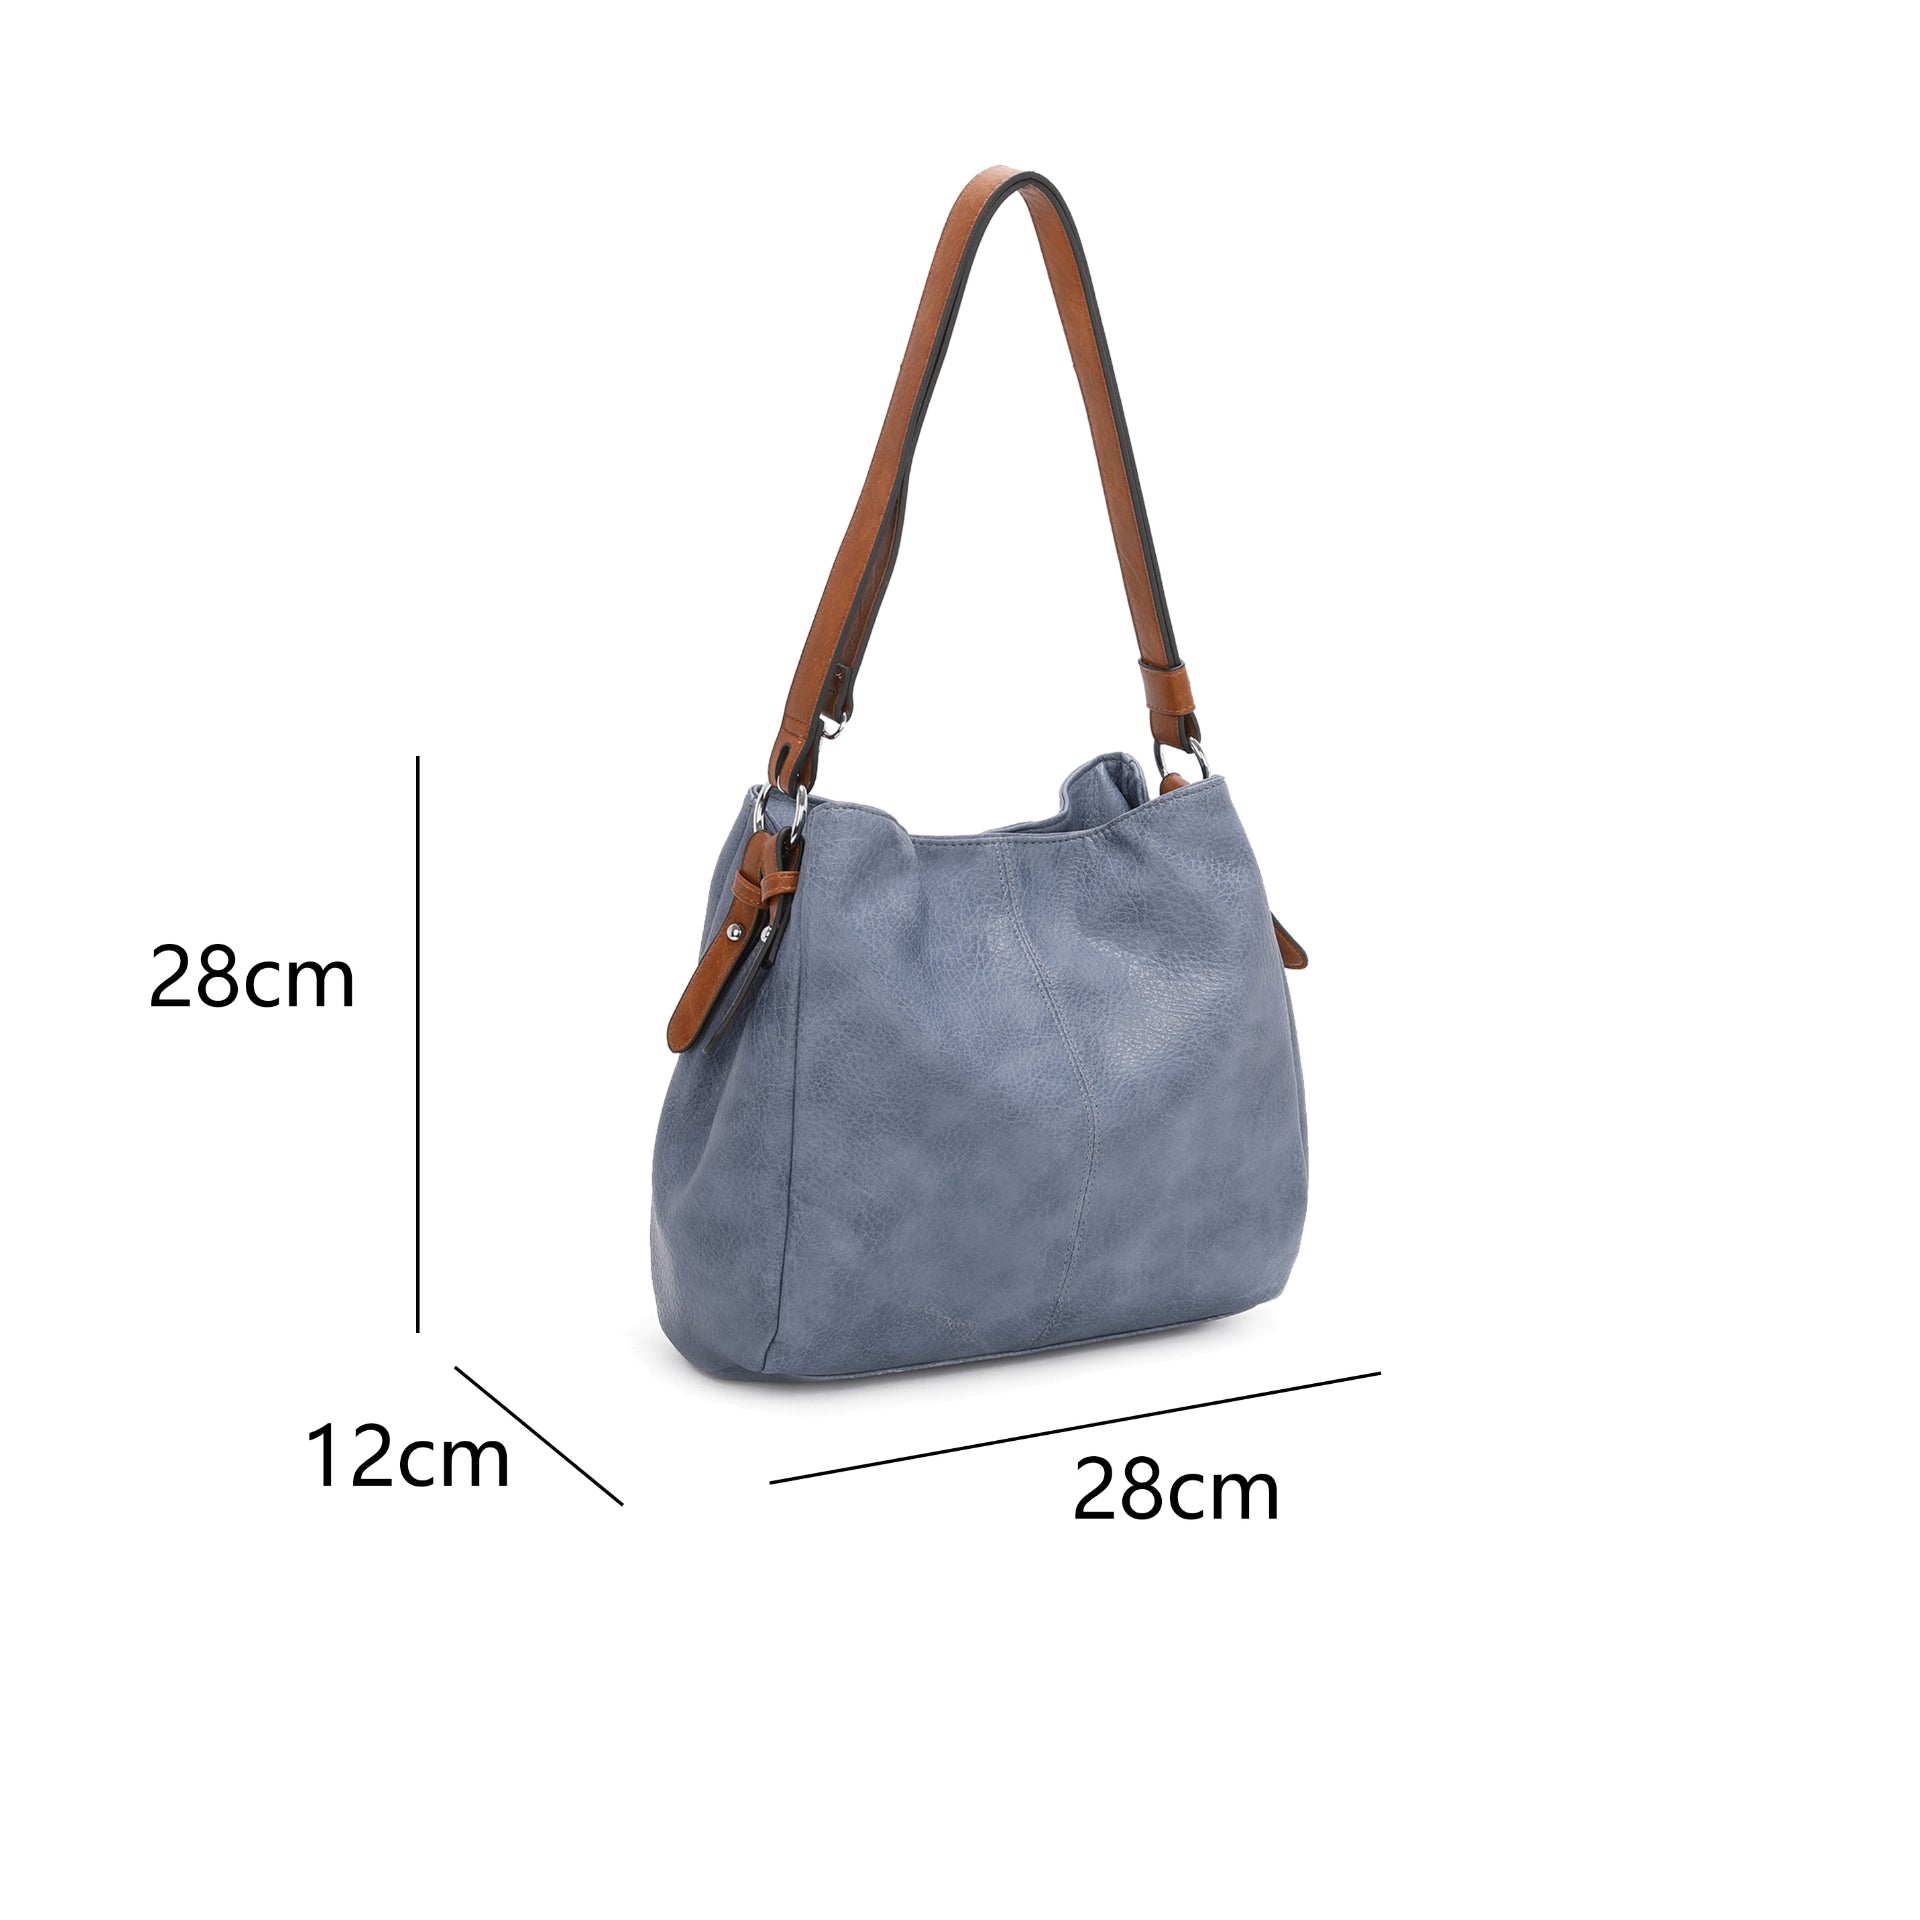 Womens Hobo Shoulder handbag With Single Large Shoulder Strap